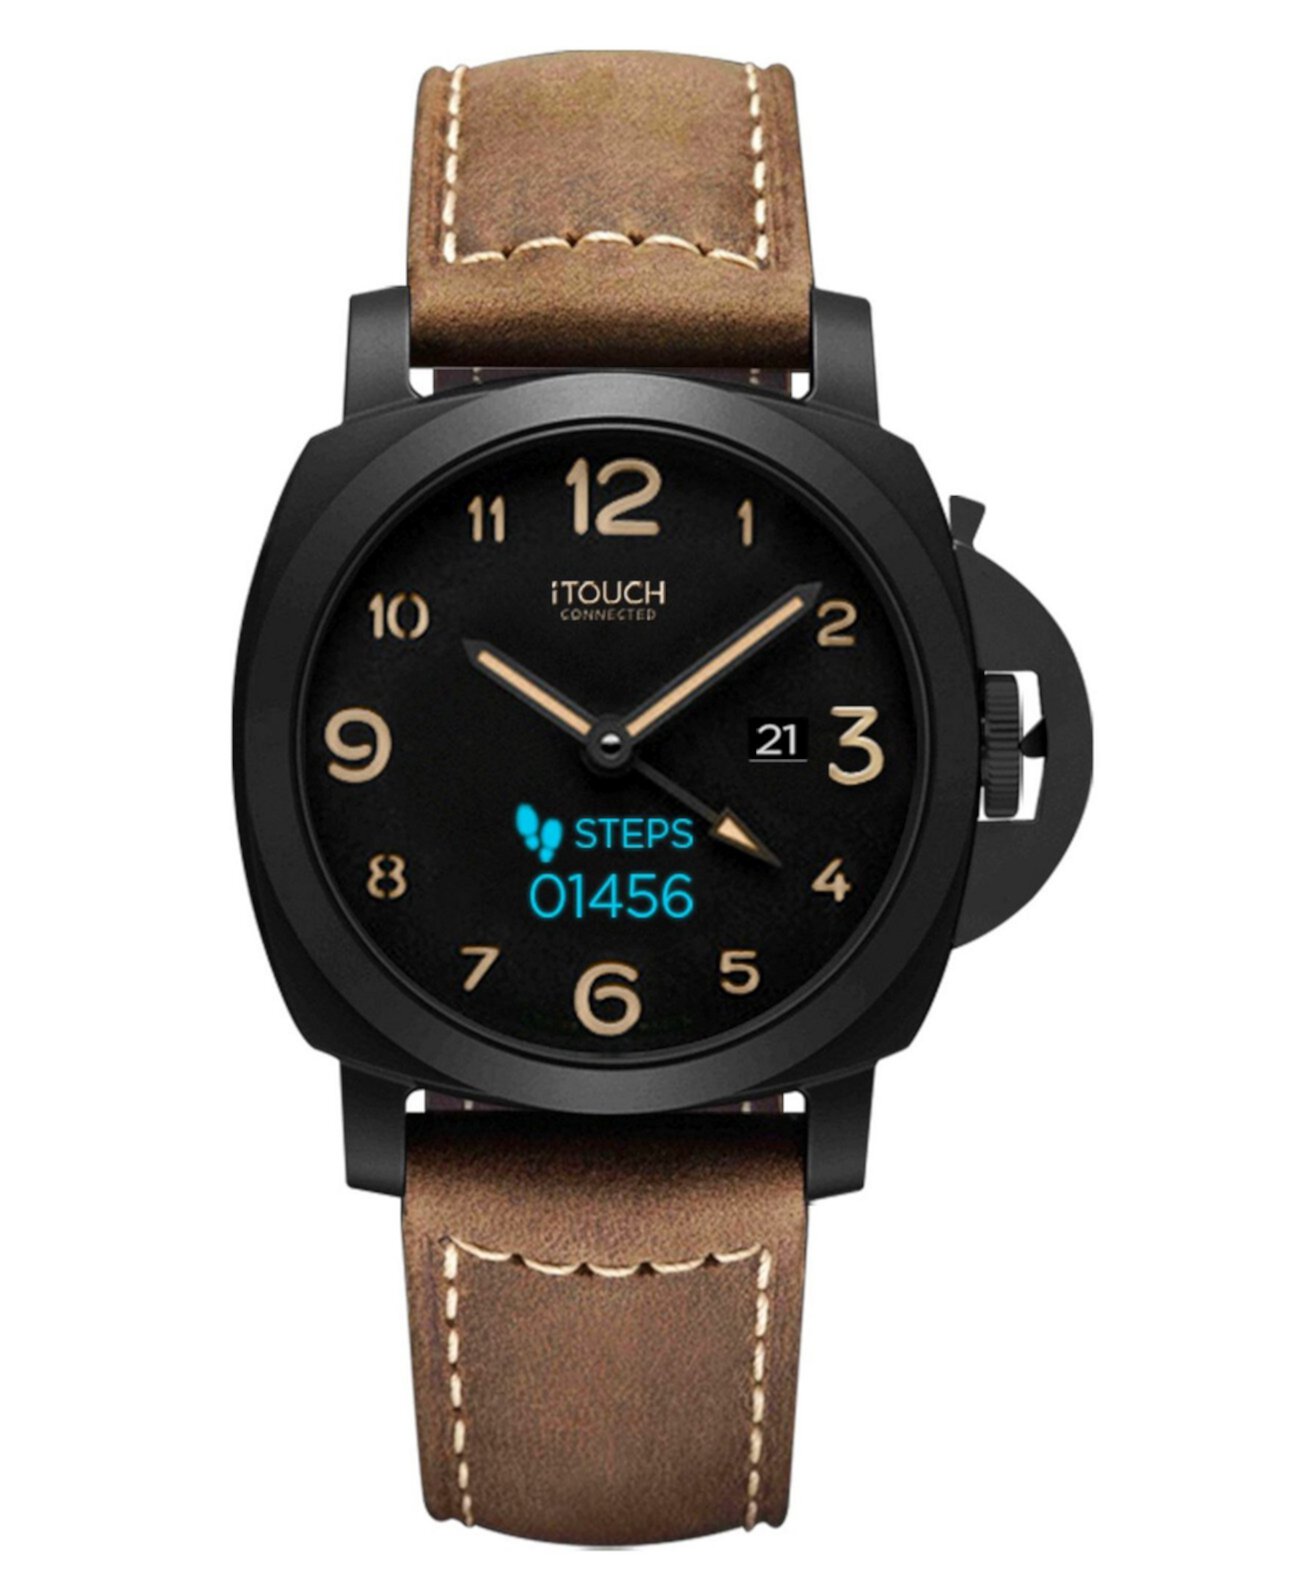 Фитнес-трекер Connected Men's Hybrid Smartwatch: черный чехол с коричневым кожаным ремешком, 44 мм ITouch